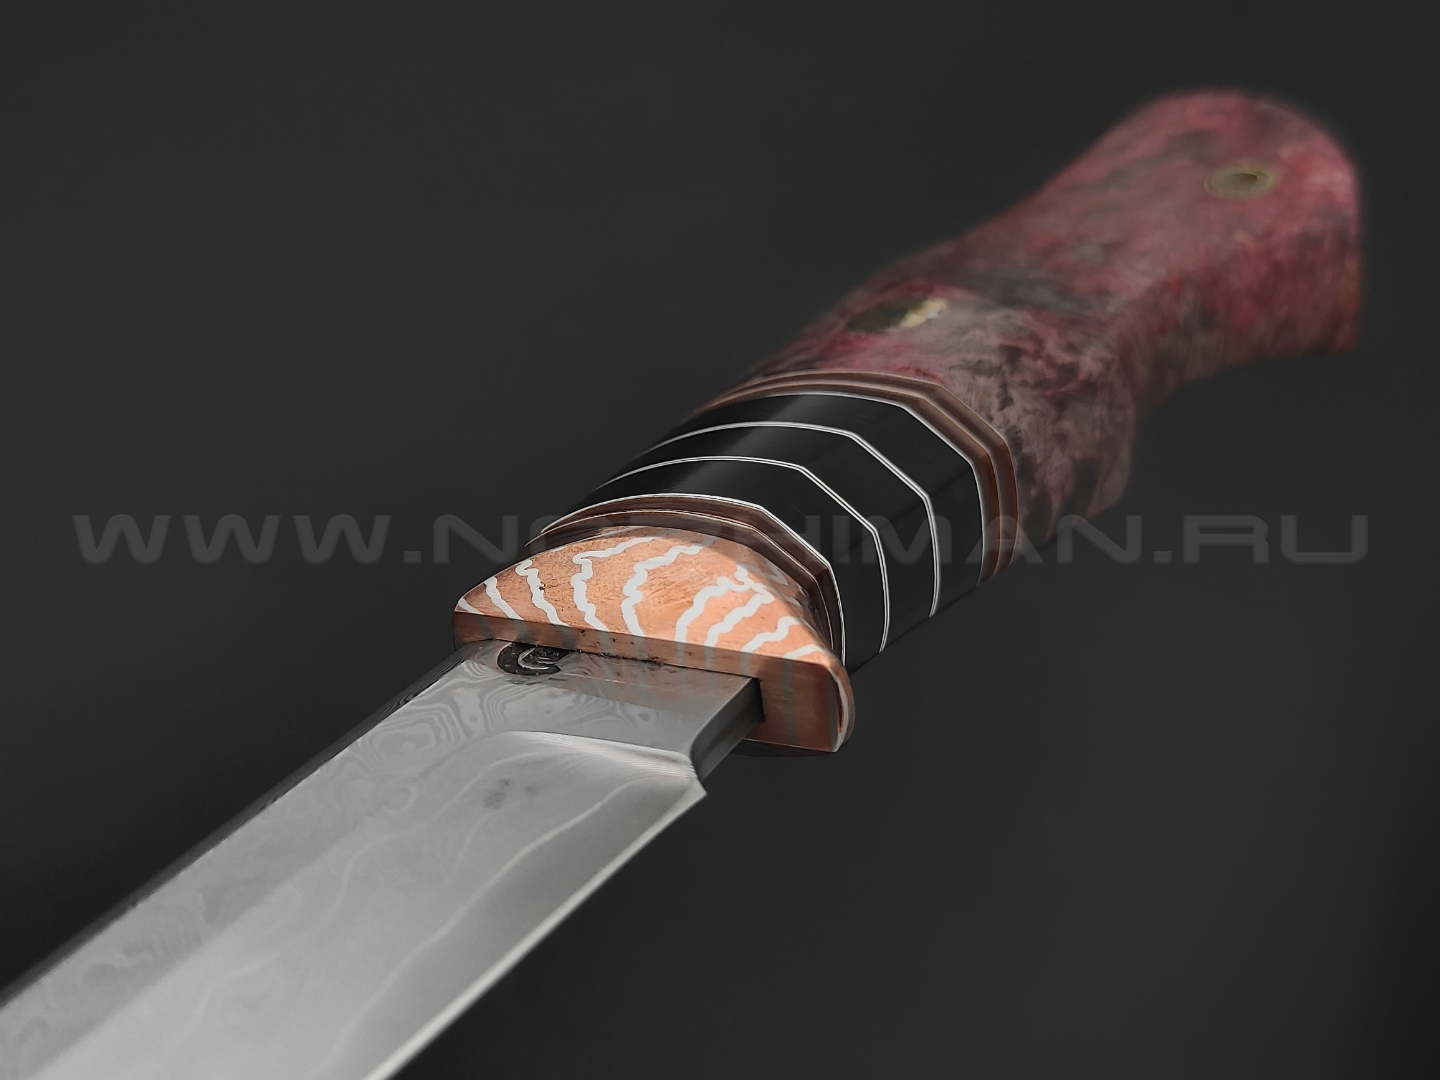 Кузница Васильева нож НЛВ130 ламинат M398, рукоять карельская береза, мокумэ-ганэ, карболит